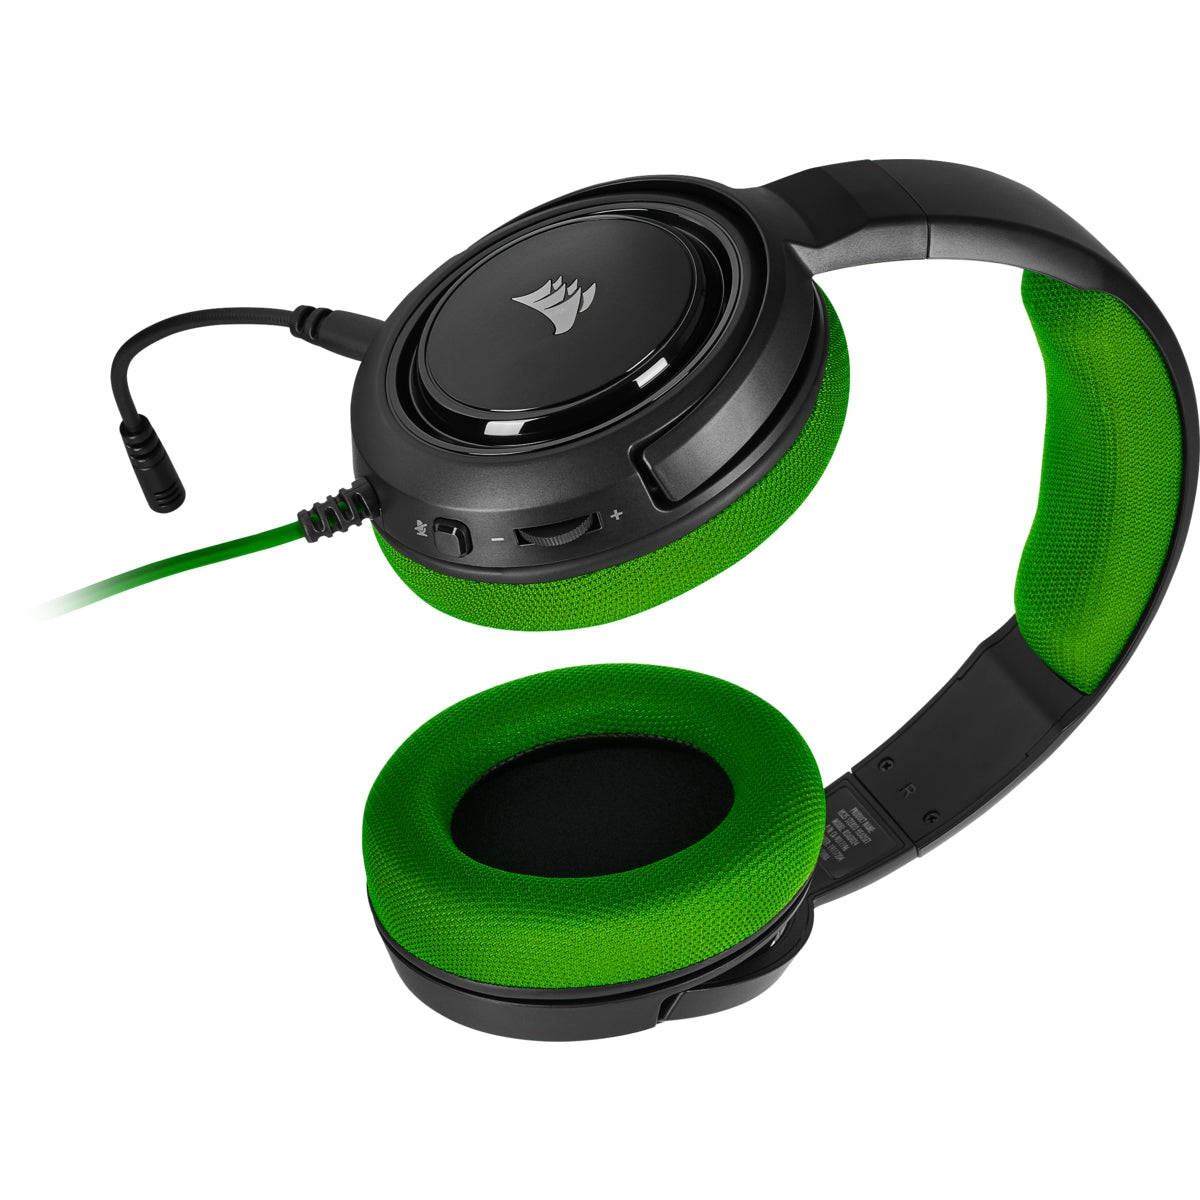 Headset Corsair Hs35 Stereo Gaming Green 3.5 Mm Ca-9011197-Na